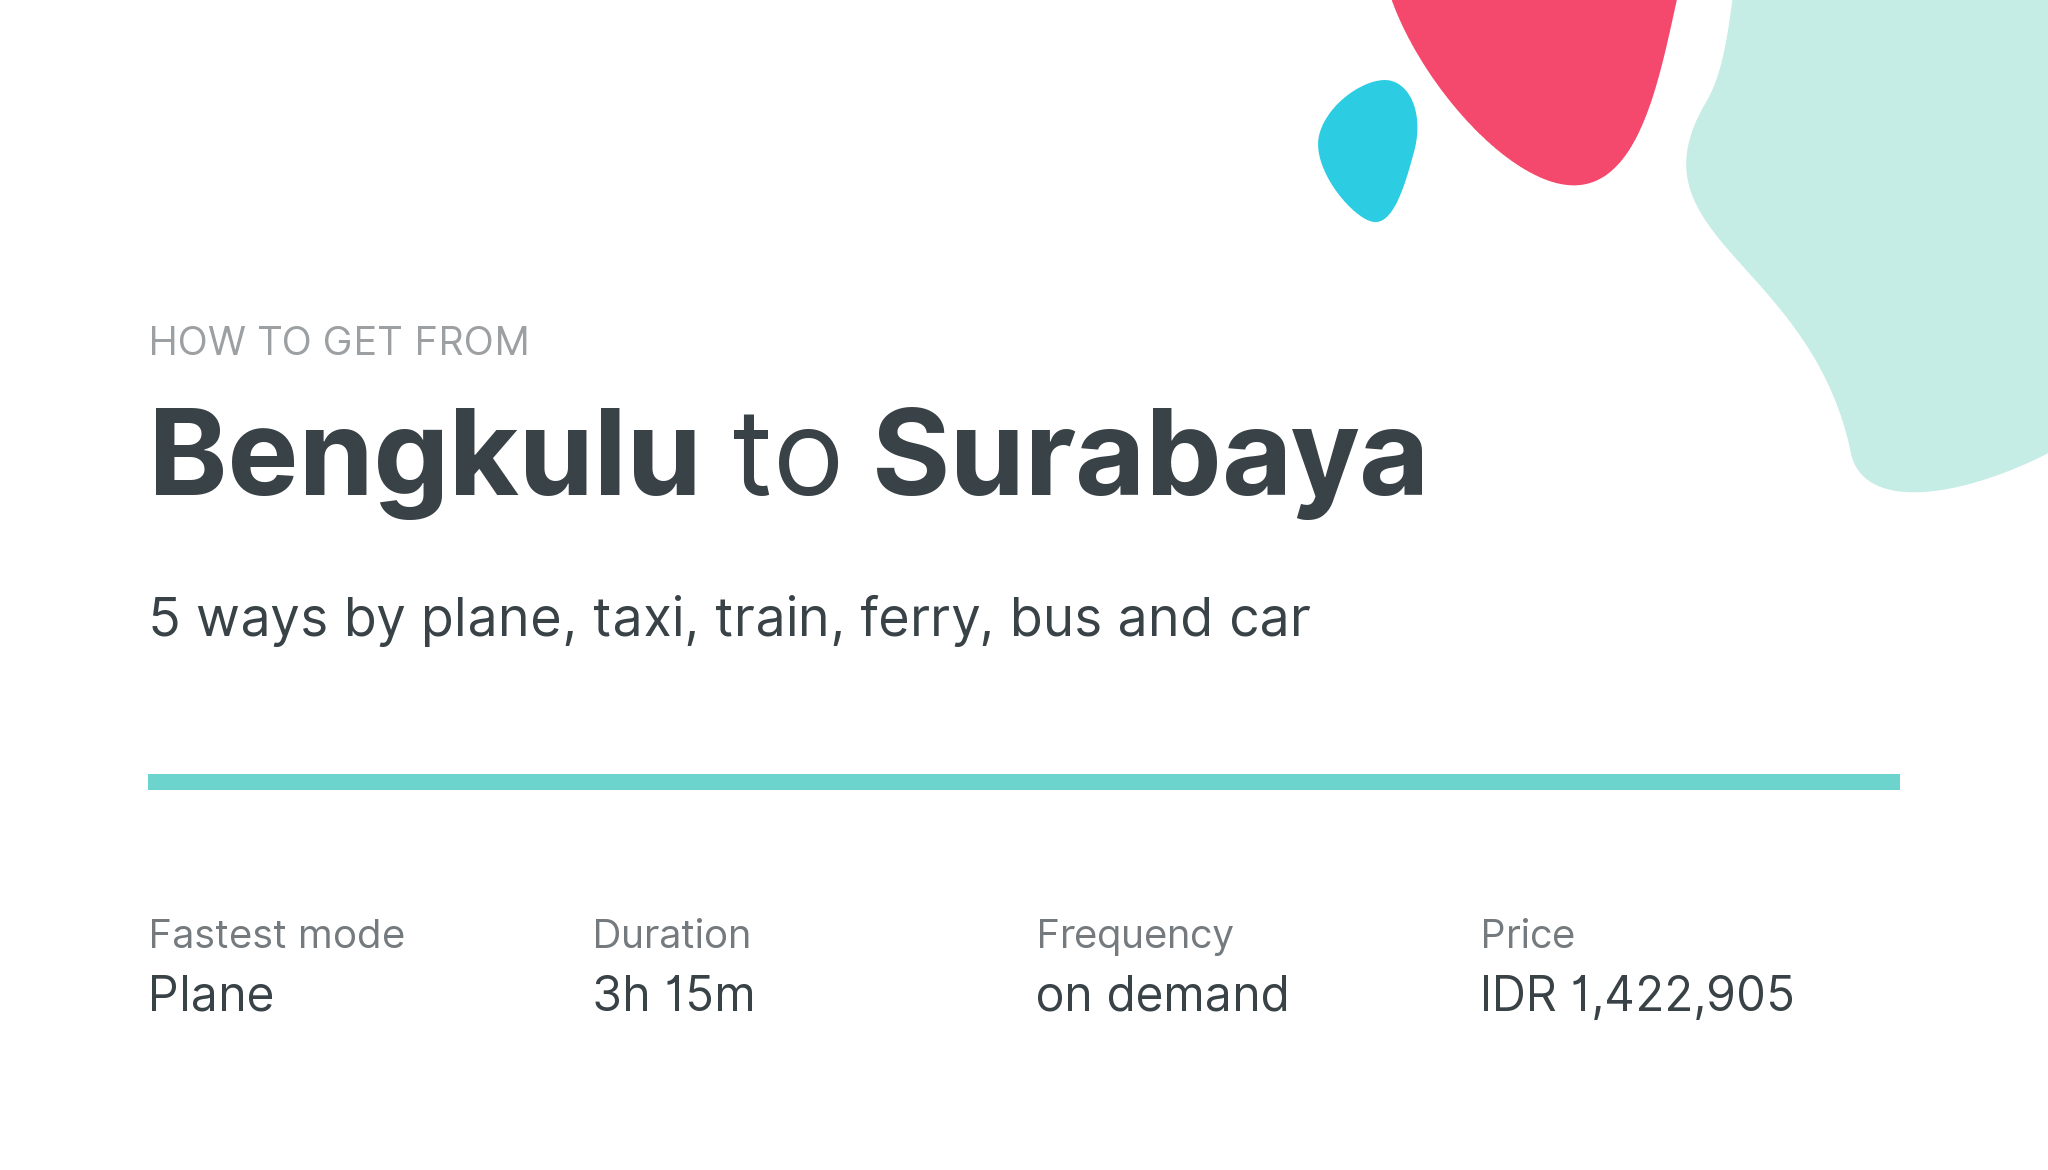 How do I get from Bengkulu to Surabaya